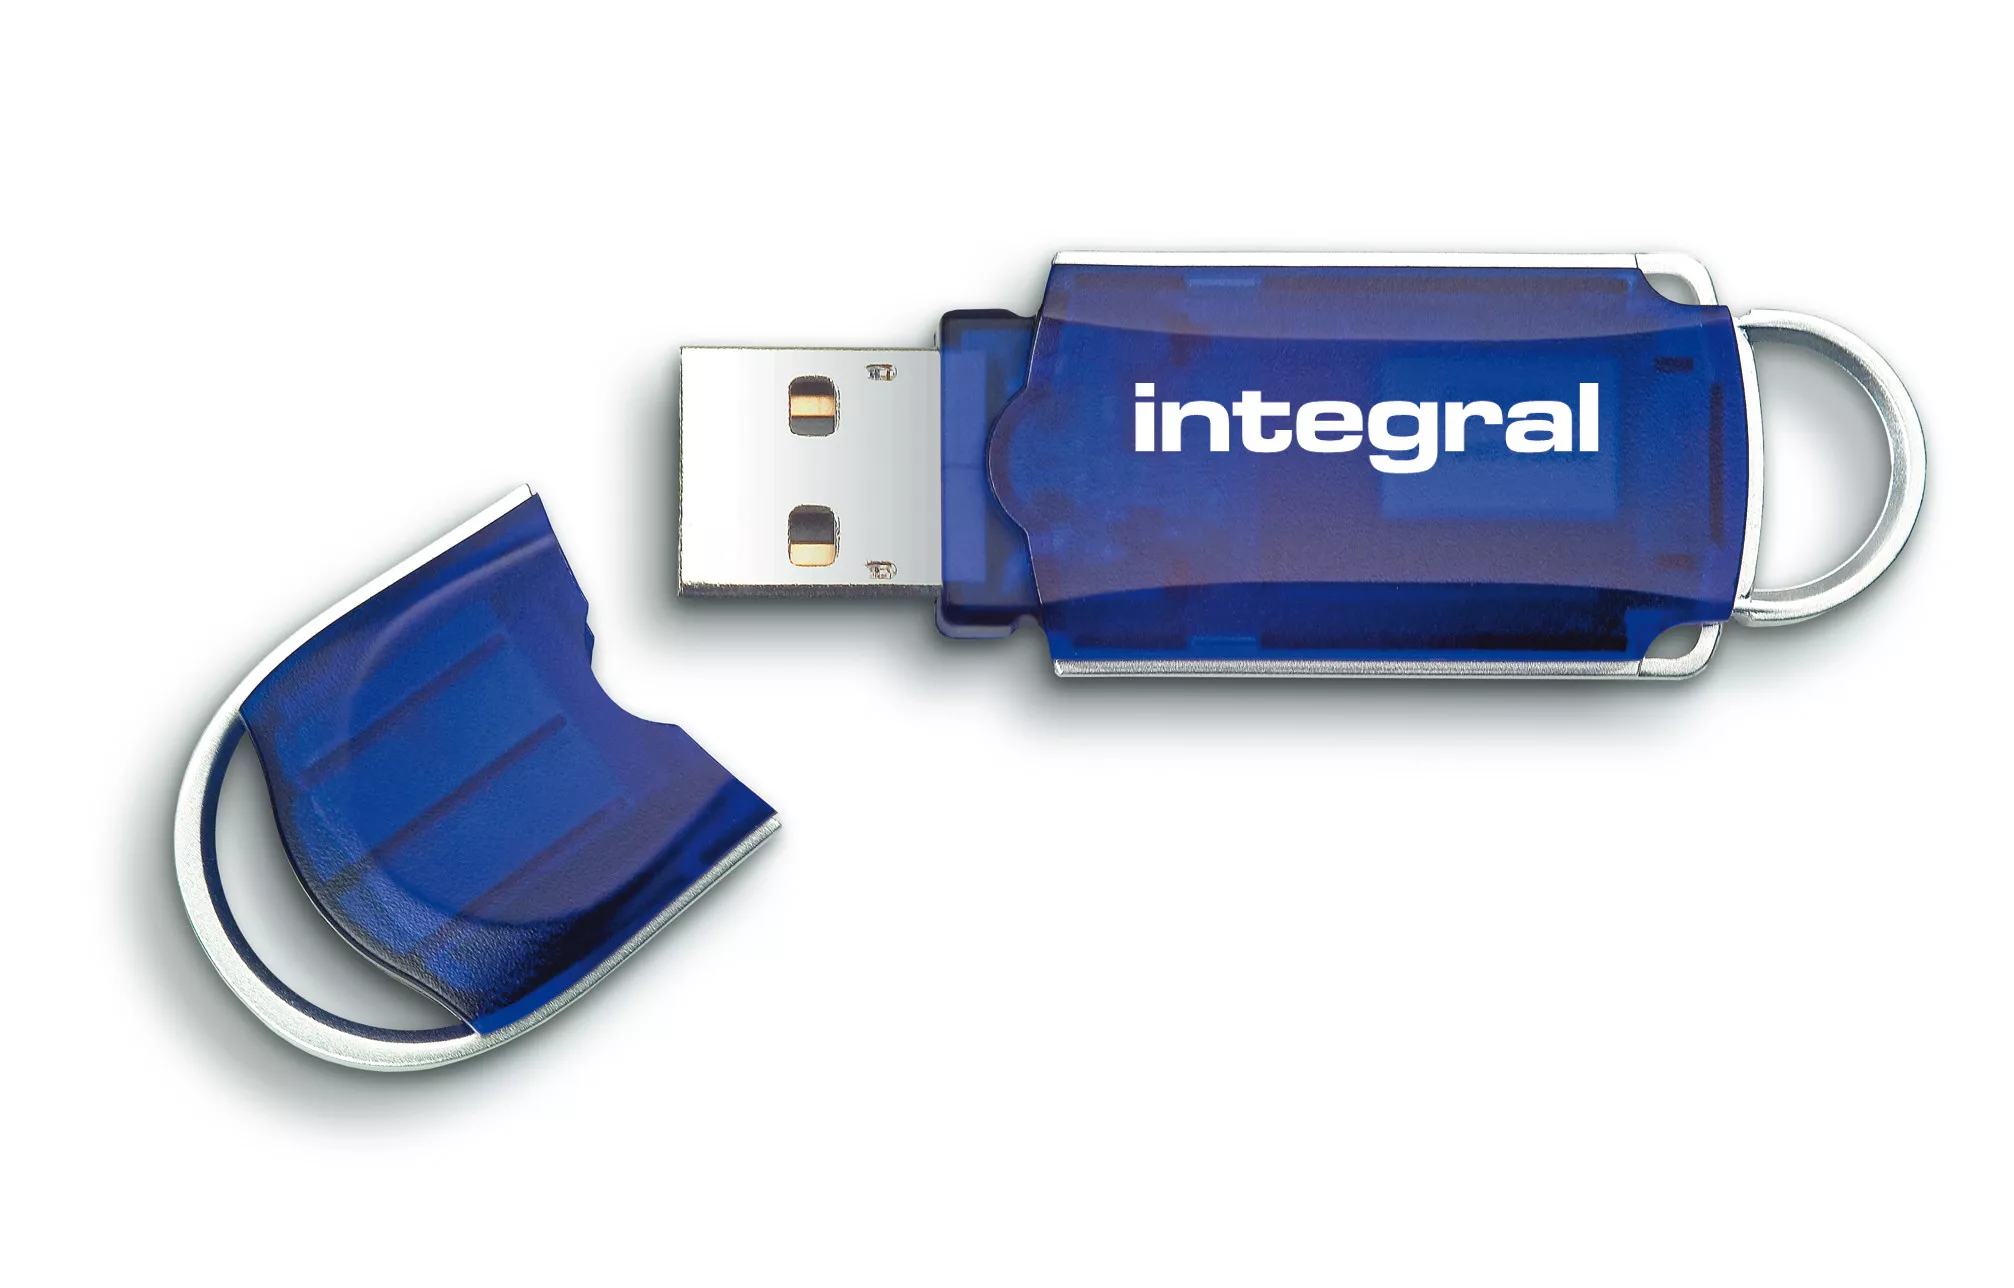 Achat Integral 16GB USB2.0 DRIVE COURIER BLUE INTEGRAL au meilleur prix